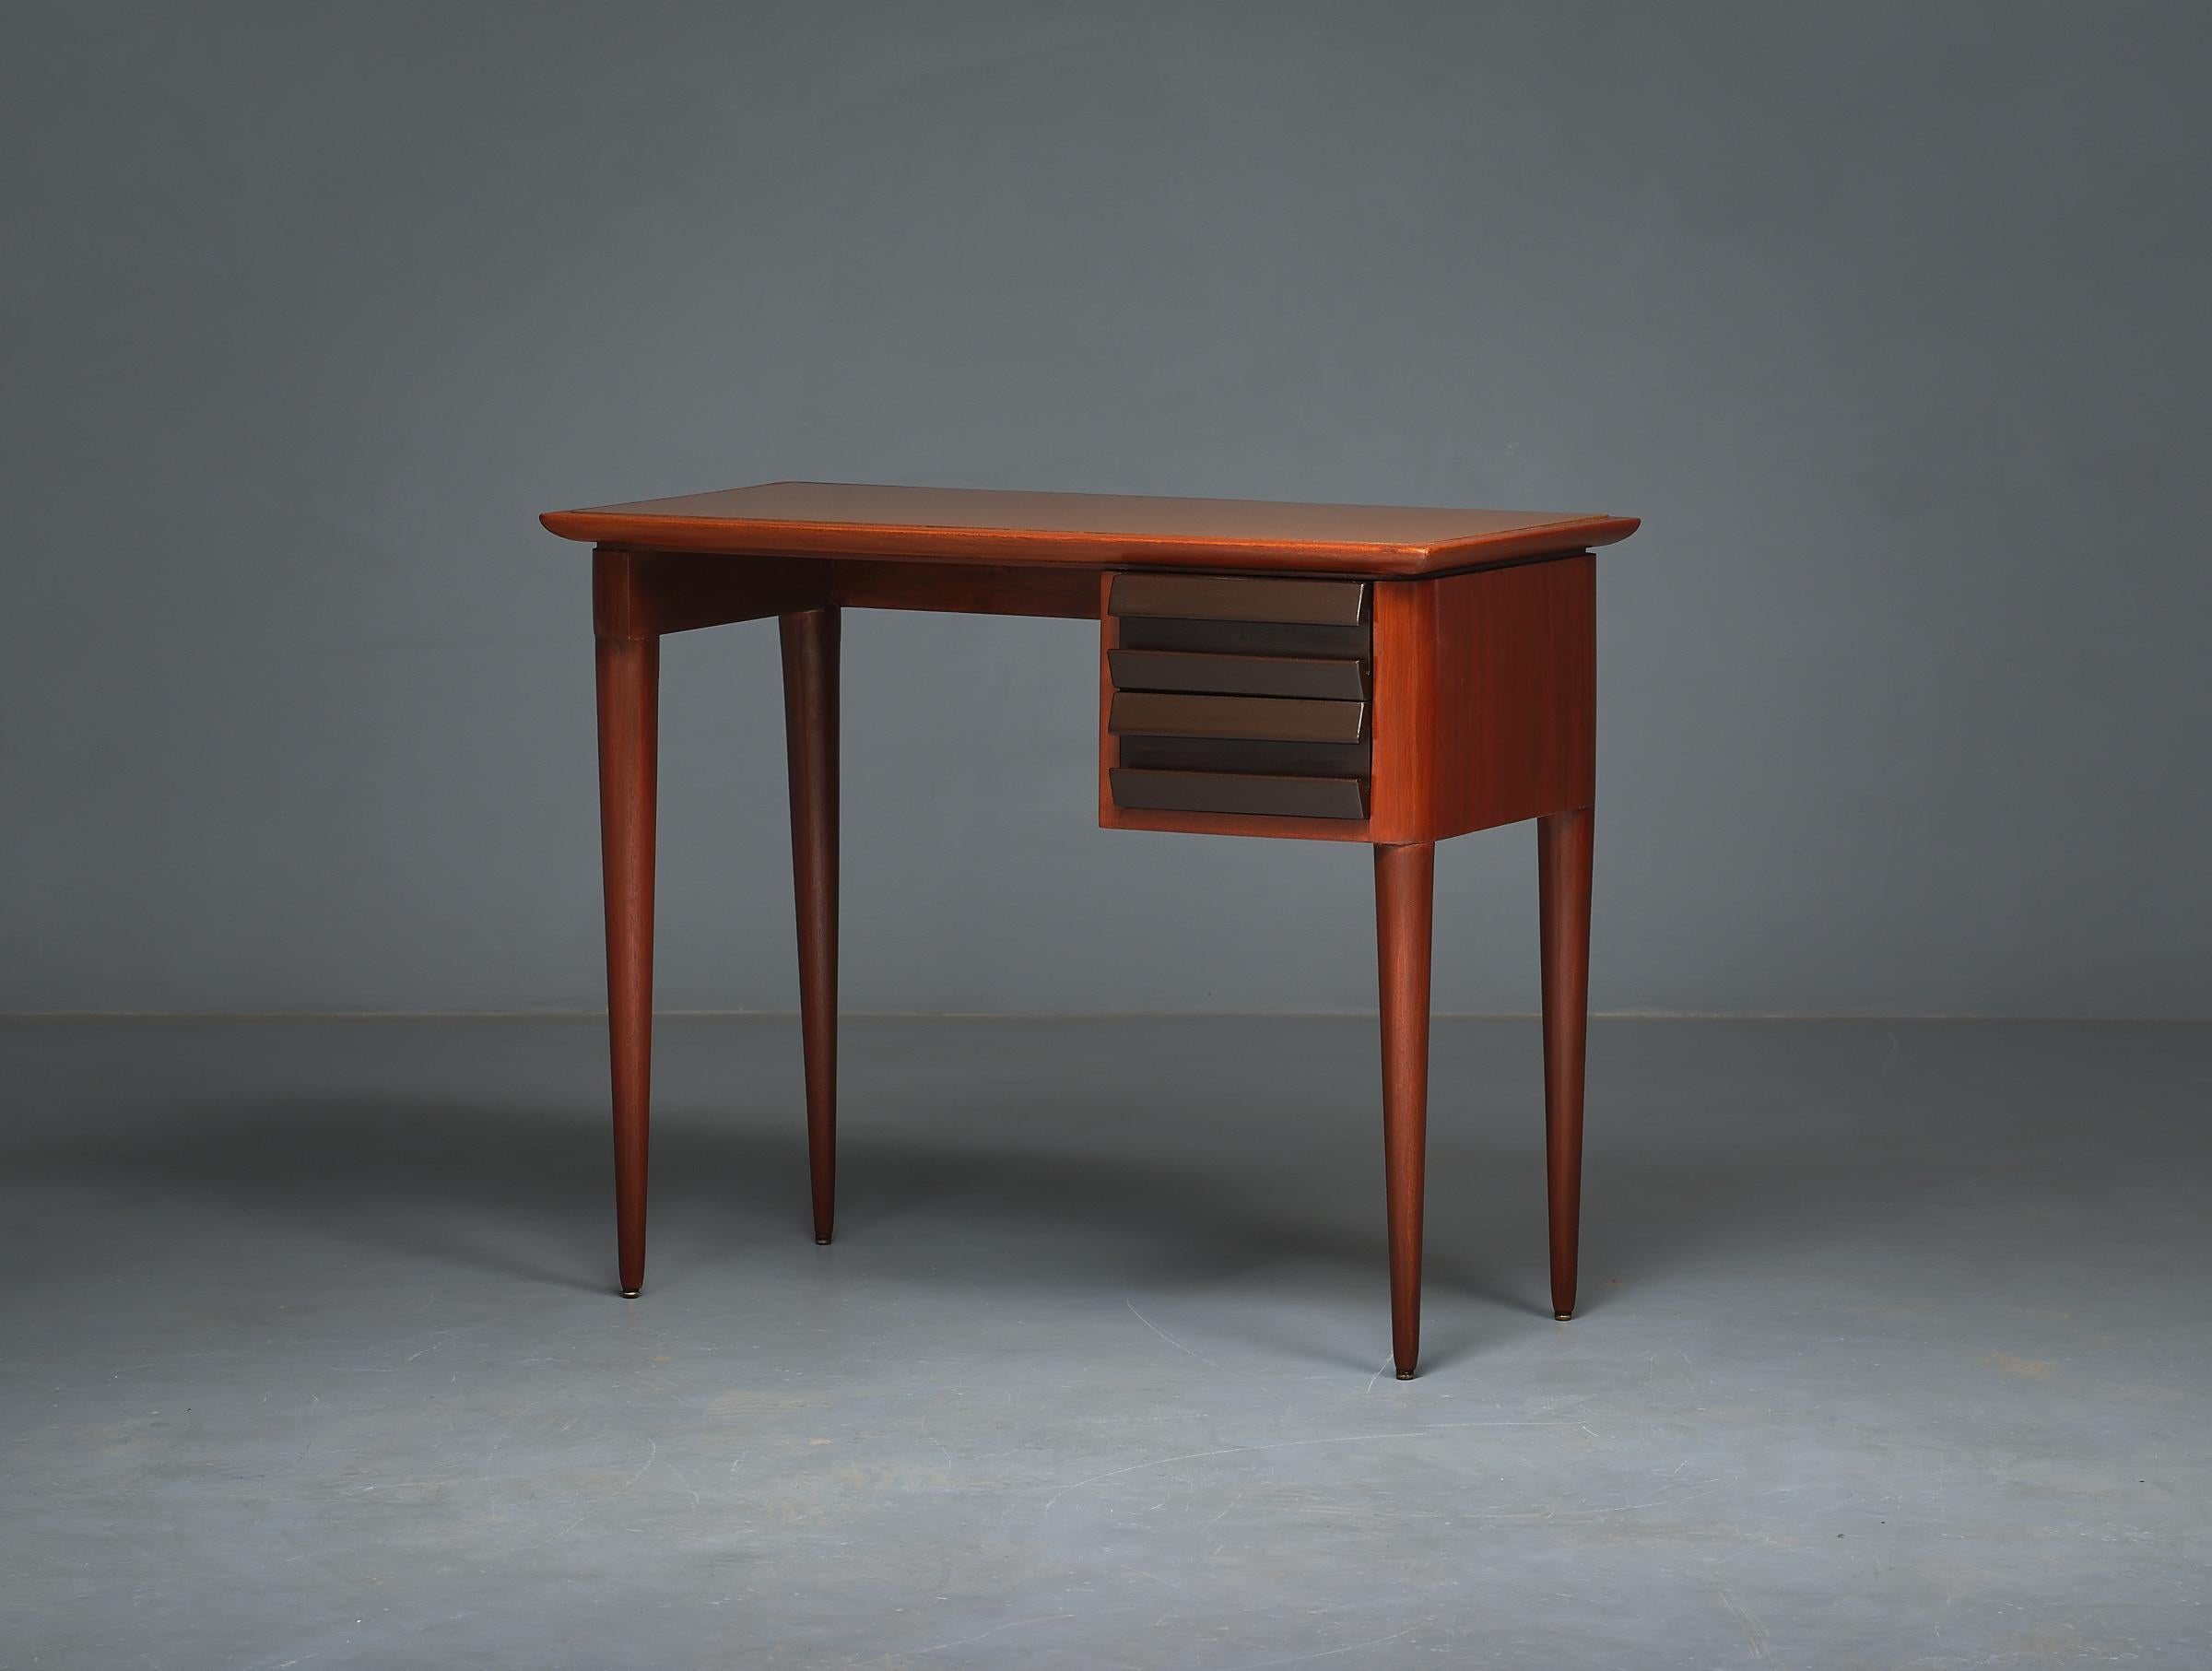 1950s Italian Design Desk by Vittorio Dassi - Exquisite, Elegant, and Restored 4